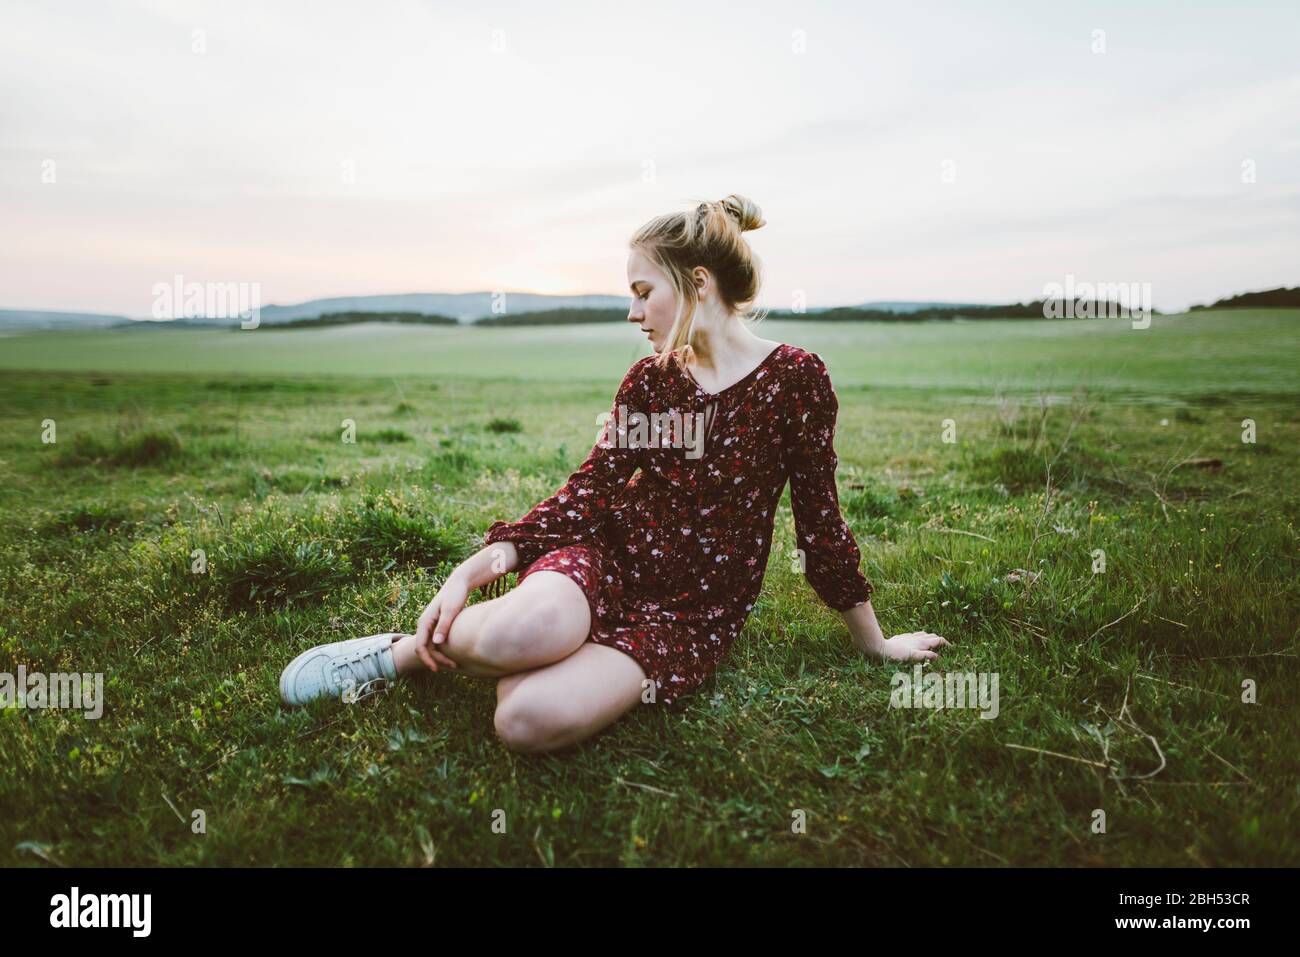 Blonde woman wearing dress sitting in field Stock Photo